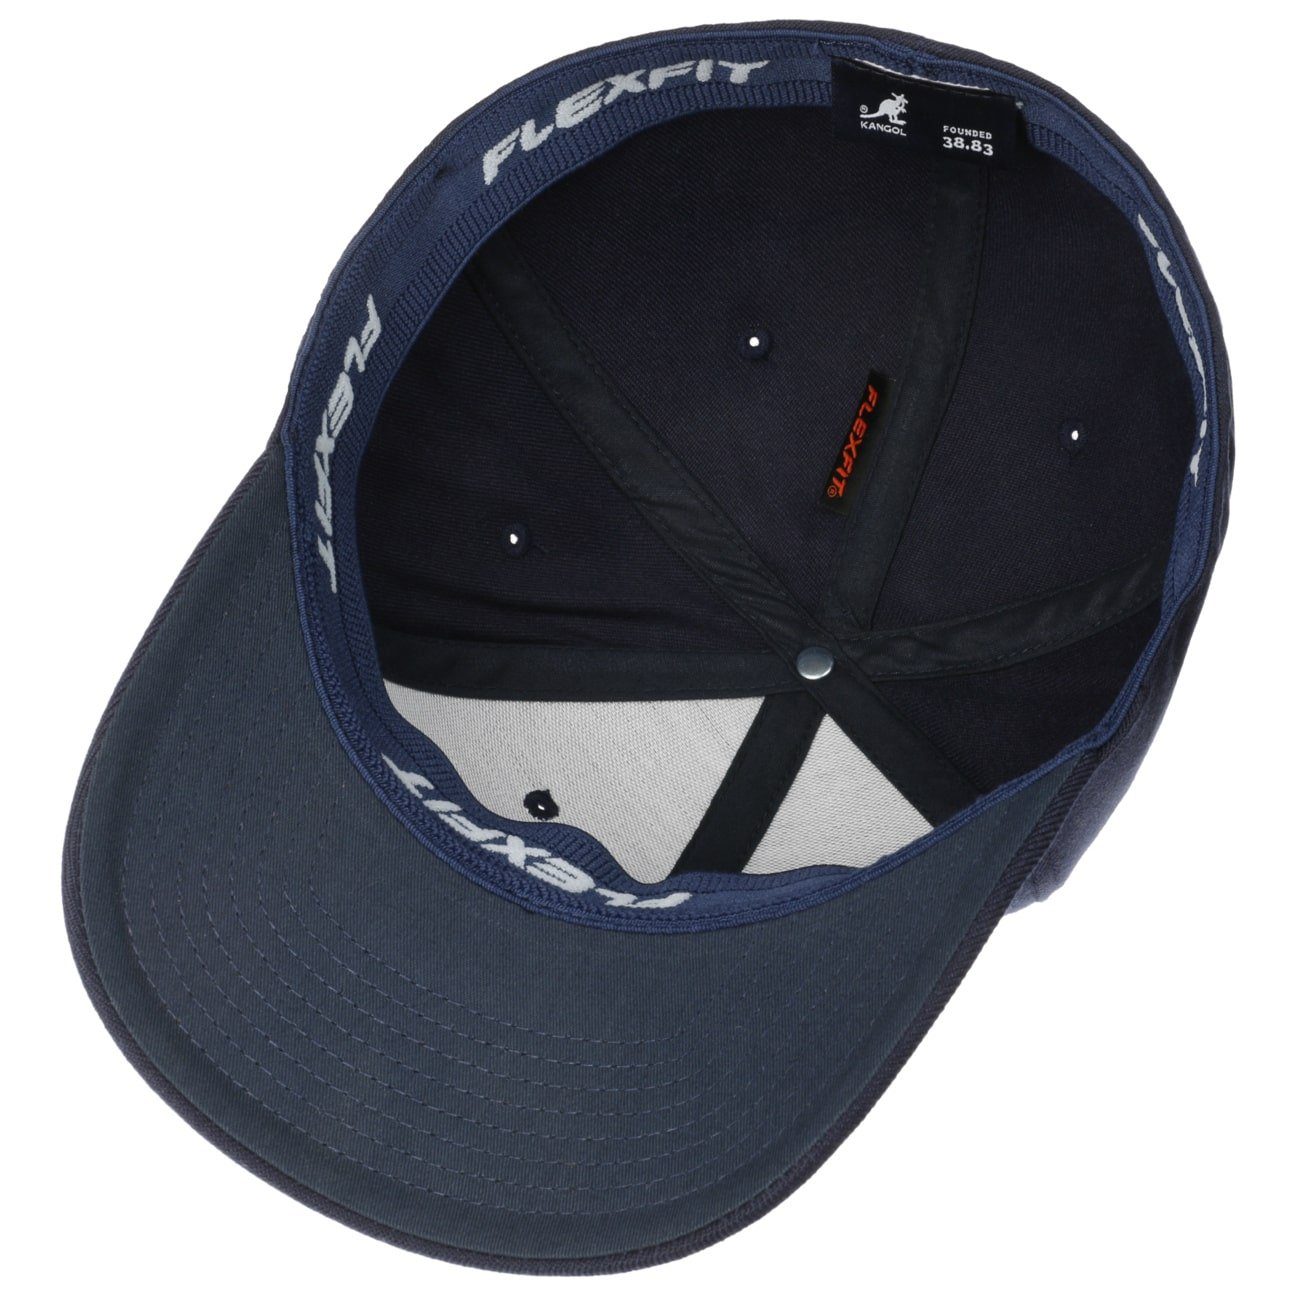 Kangol Baseball Cap (1-St) Baseballcap blau geschlossen Hinten